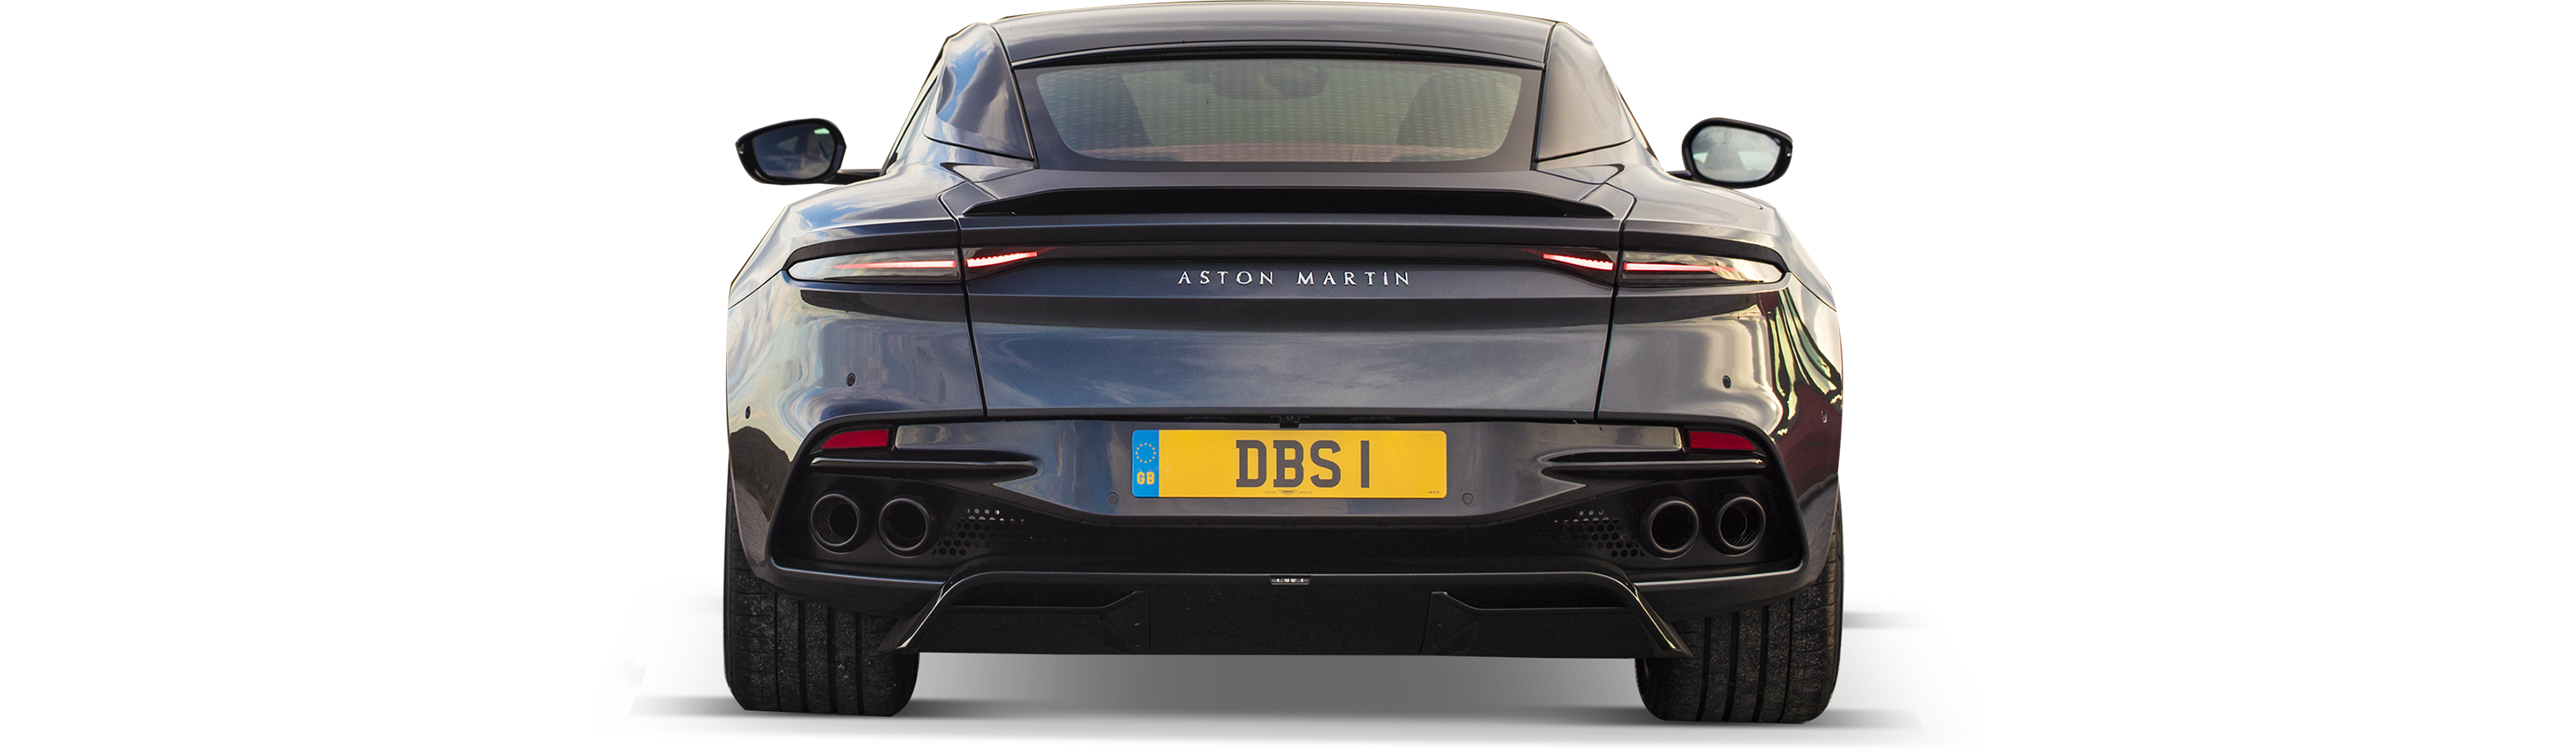 Aston Martin DBS Coupé Superleggera